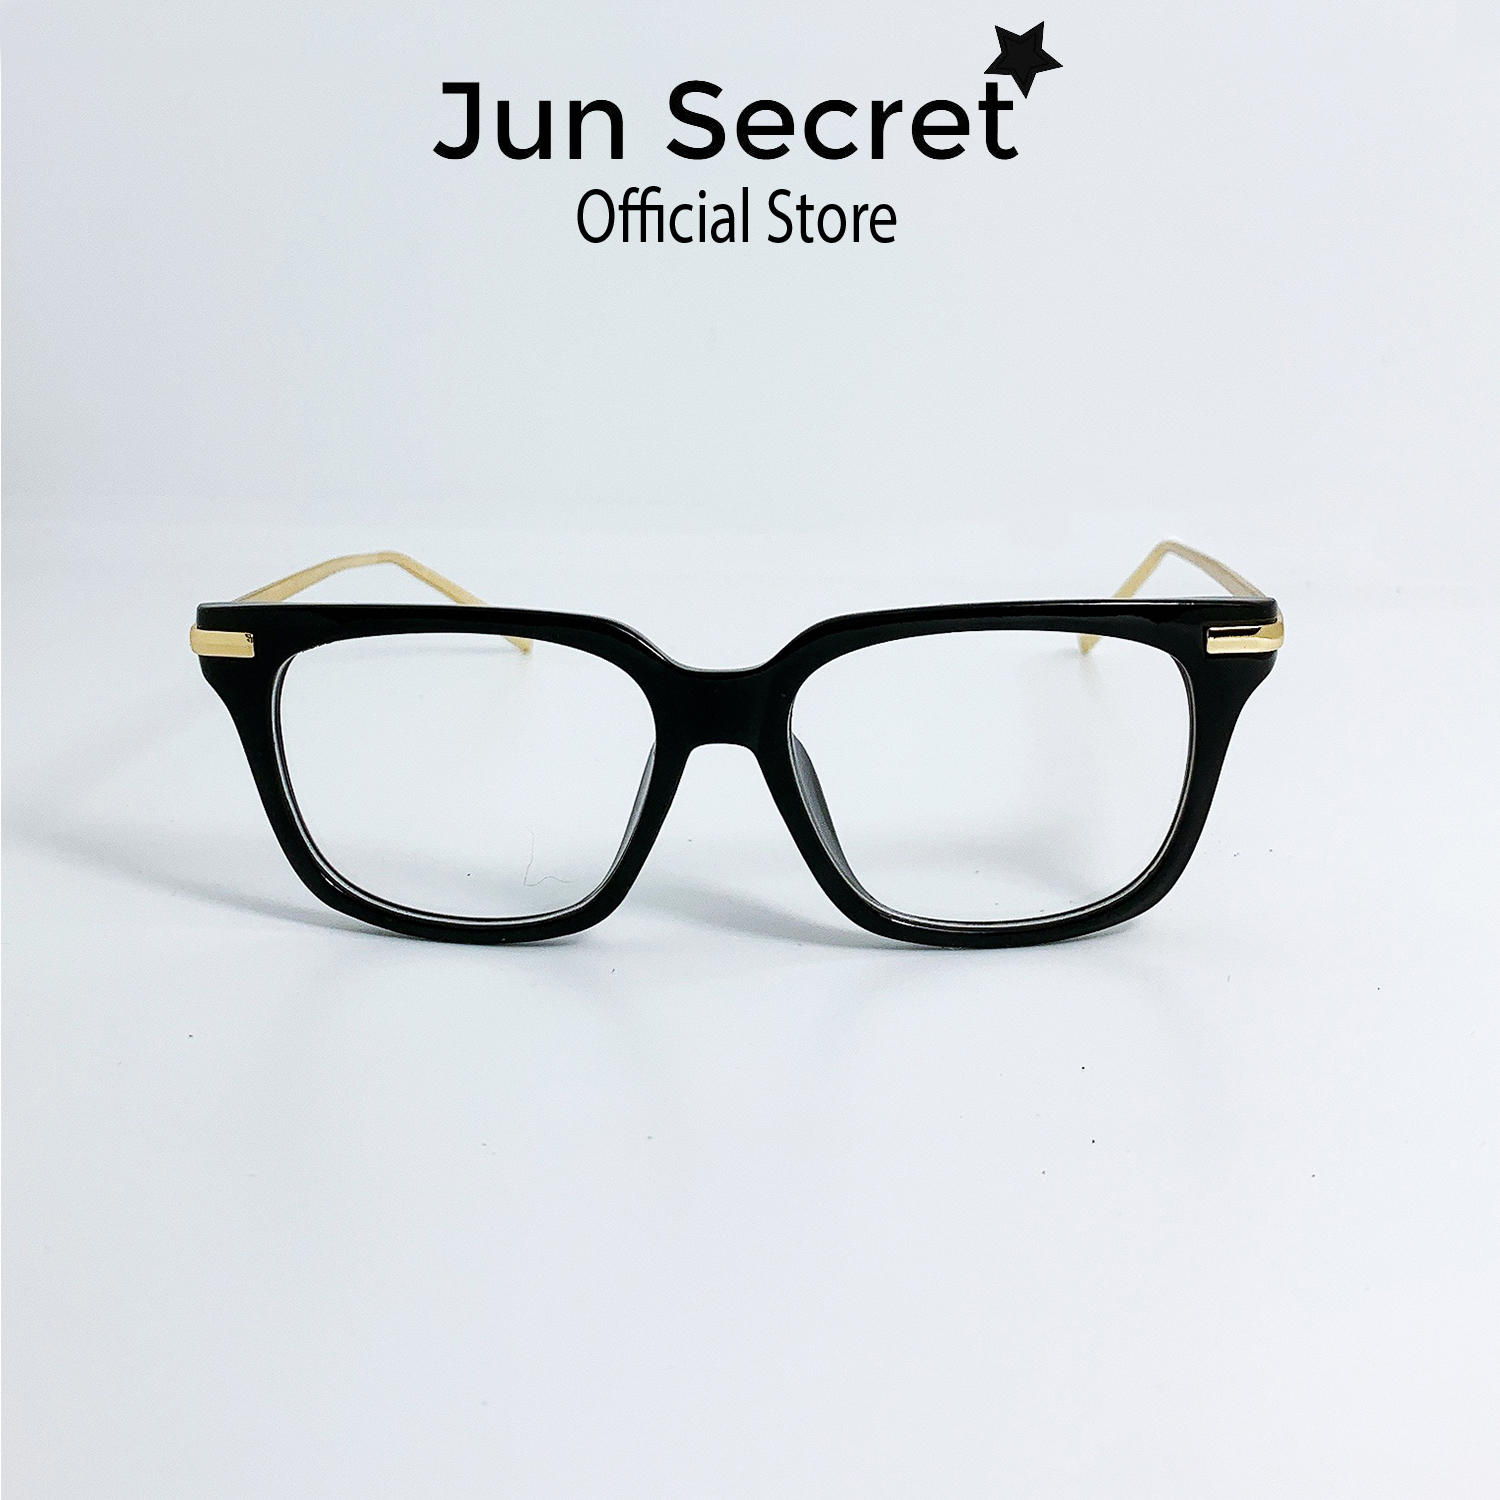 Gọng kính cận kim loại nam nữ Jun Secret form vuông phù hợp với nhiều khuôn mặt JS55A10